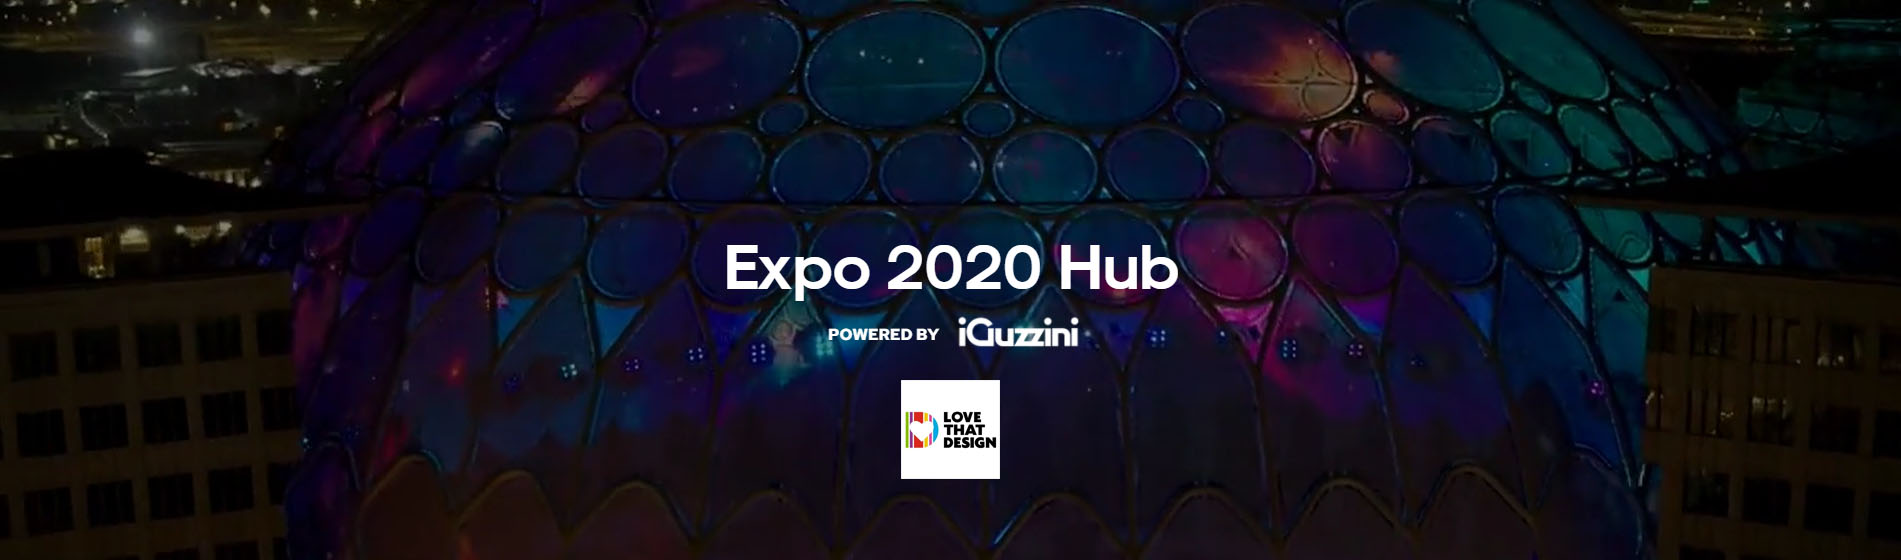 Expo Dubai 2020 continues with iGuzzini